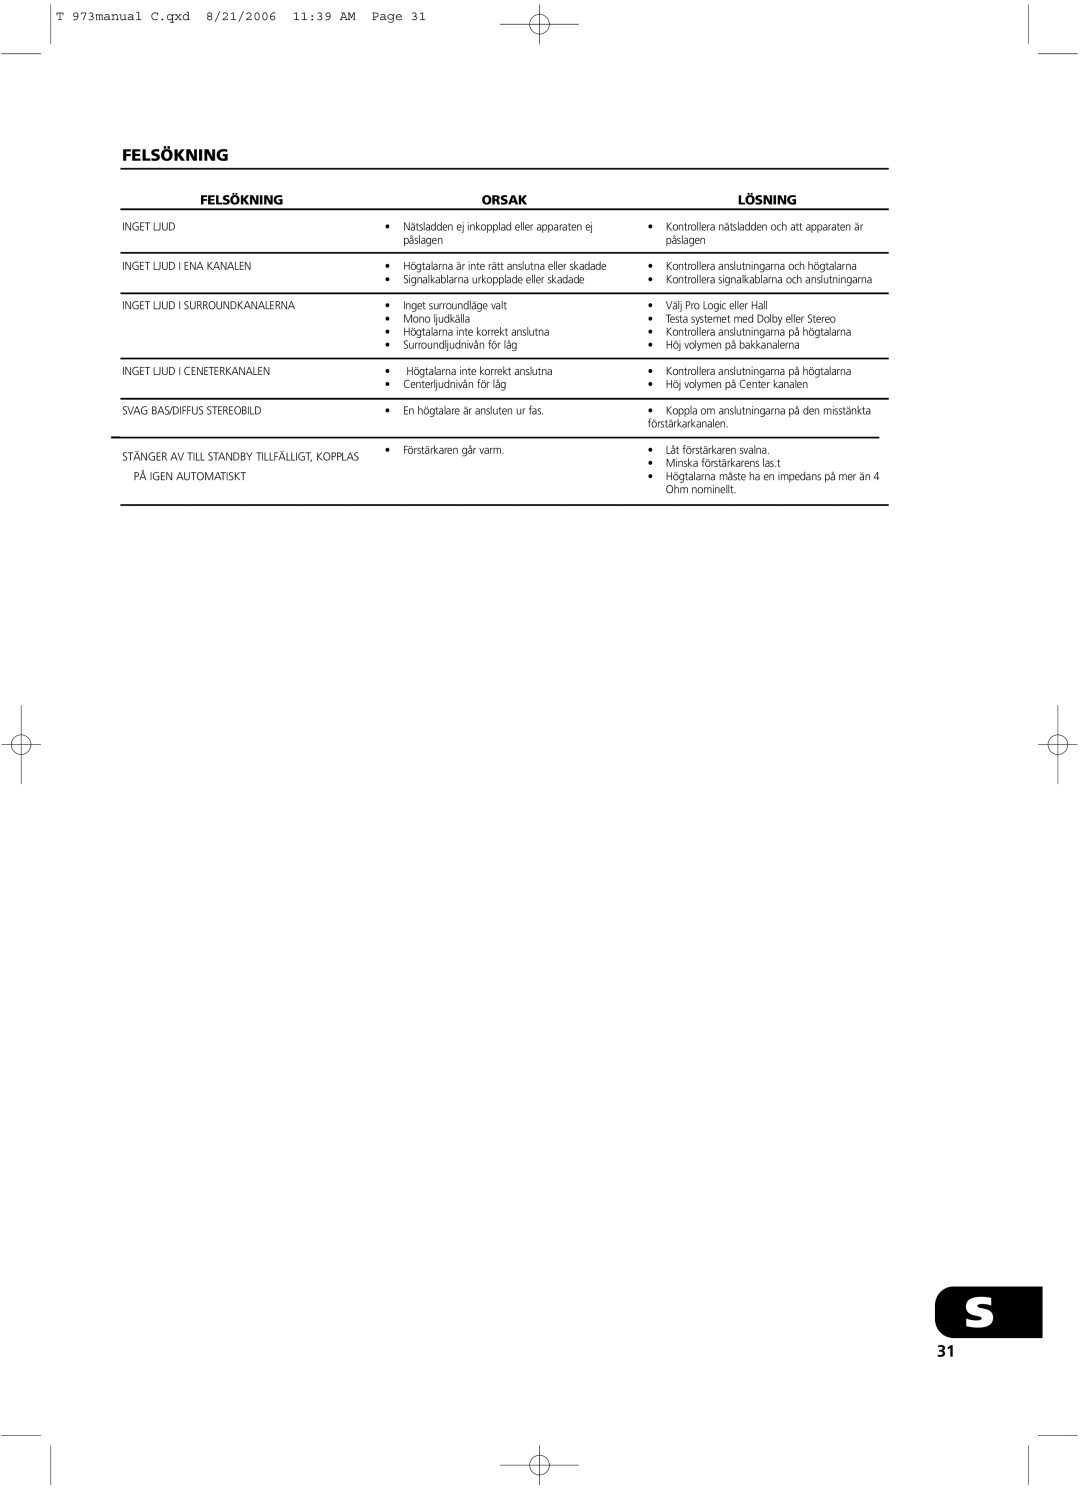 NAD owner manual Felsökning, Orsak, Lösning, T 973manual C.qxd 8/21/2006 11 39 AM Page 